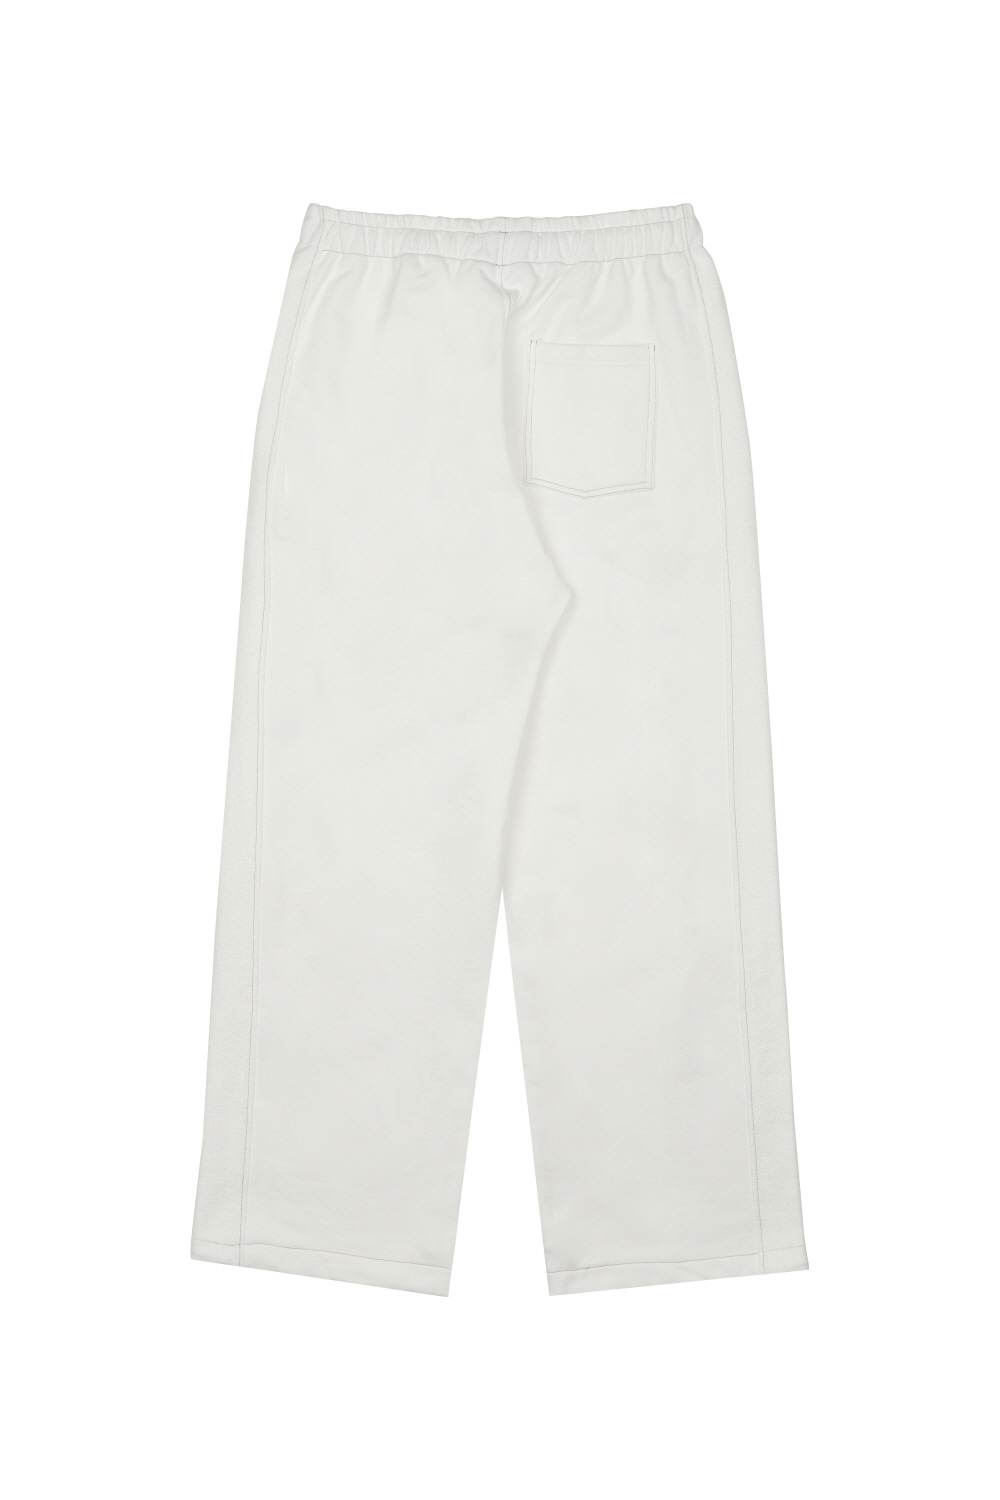 Pants white color image-S18L4